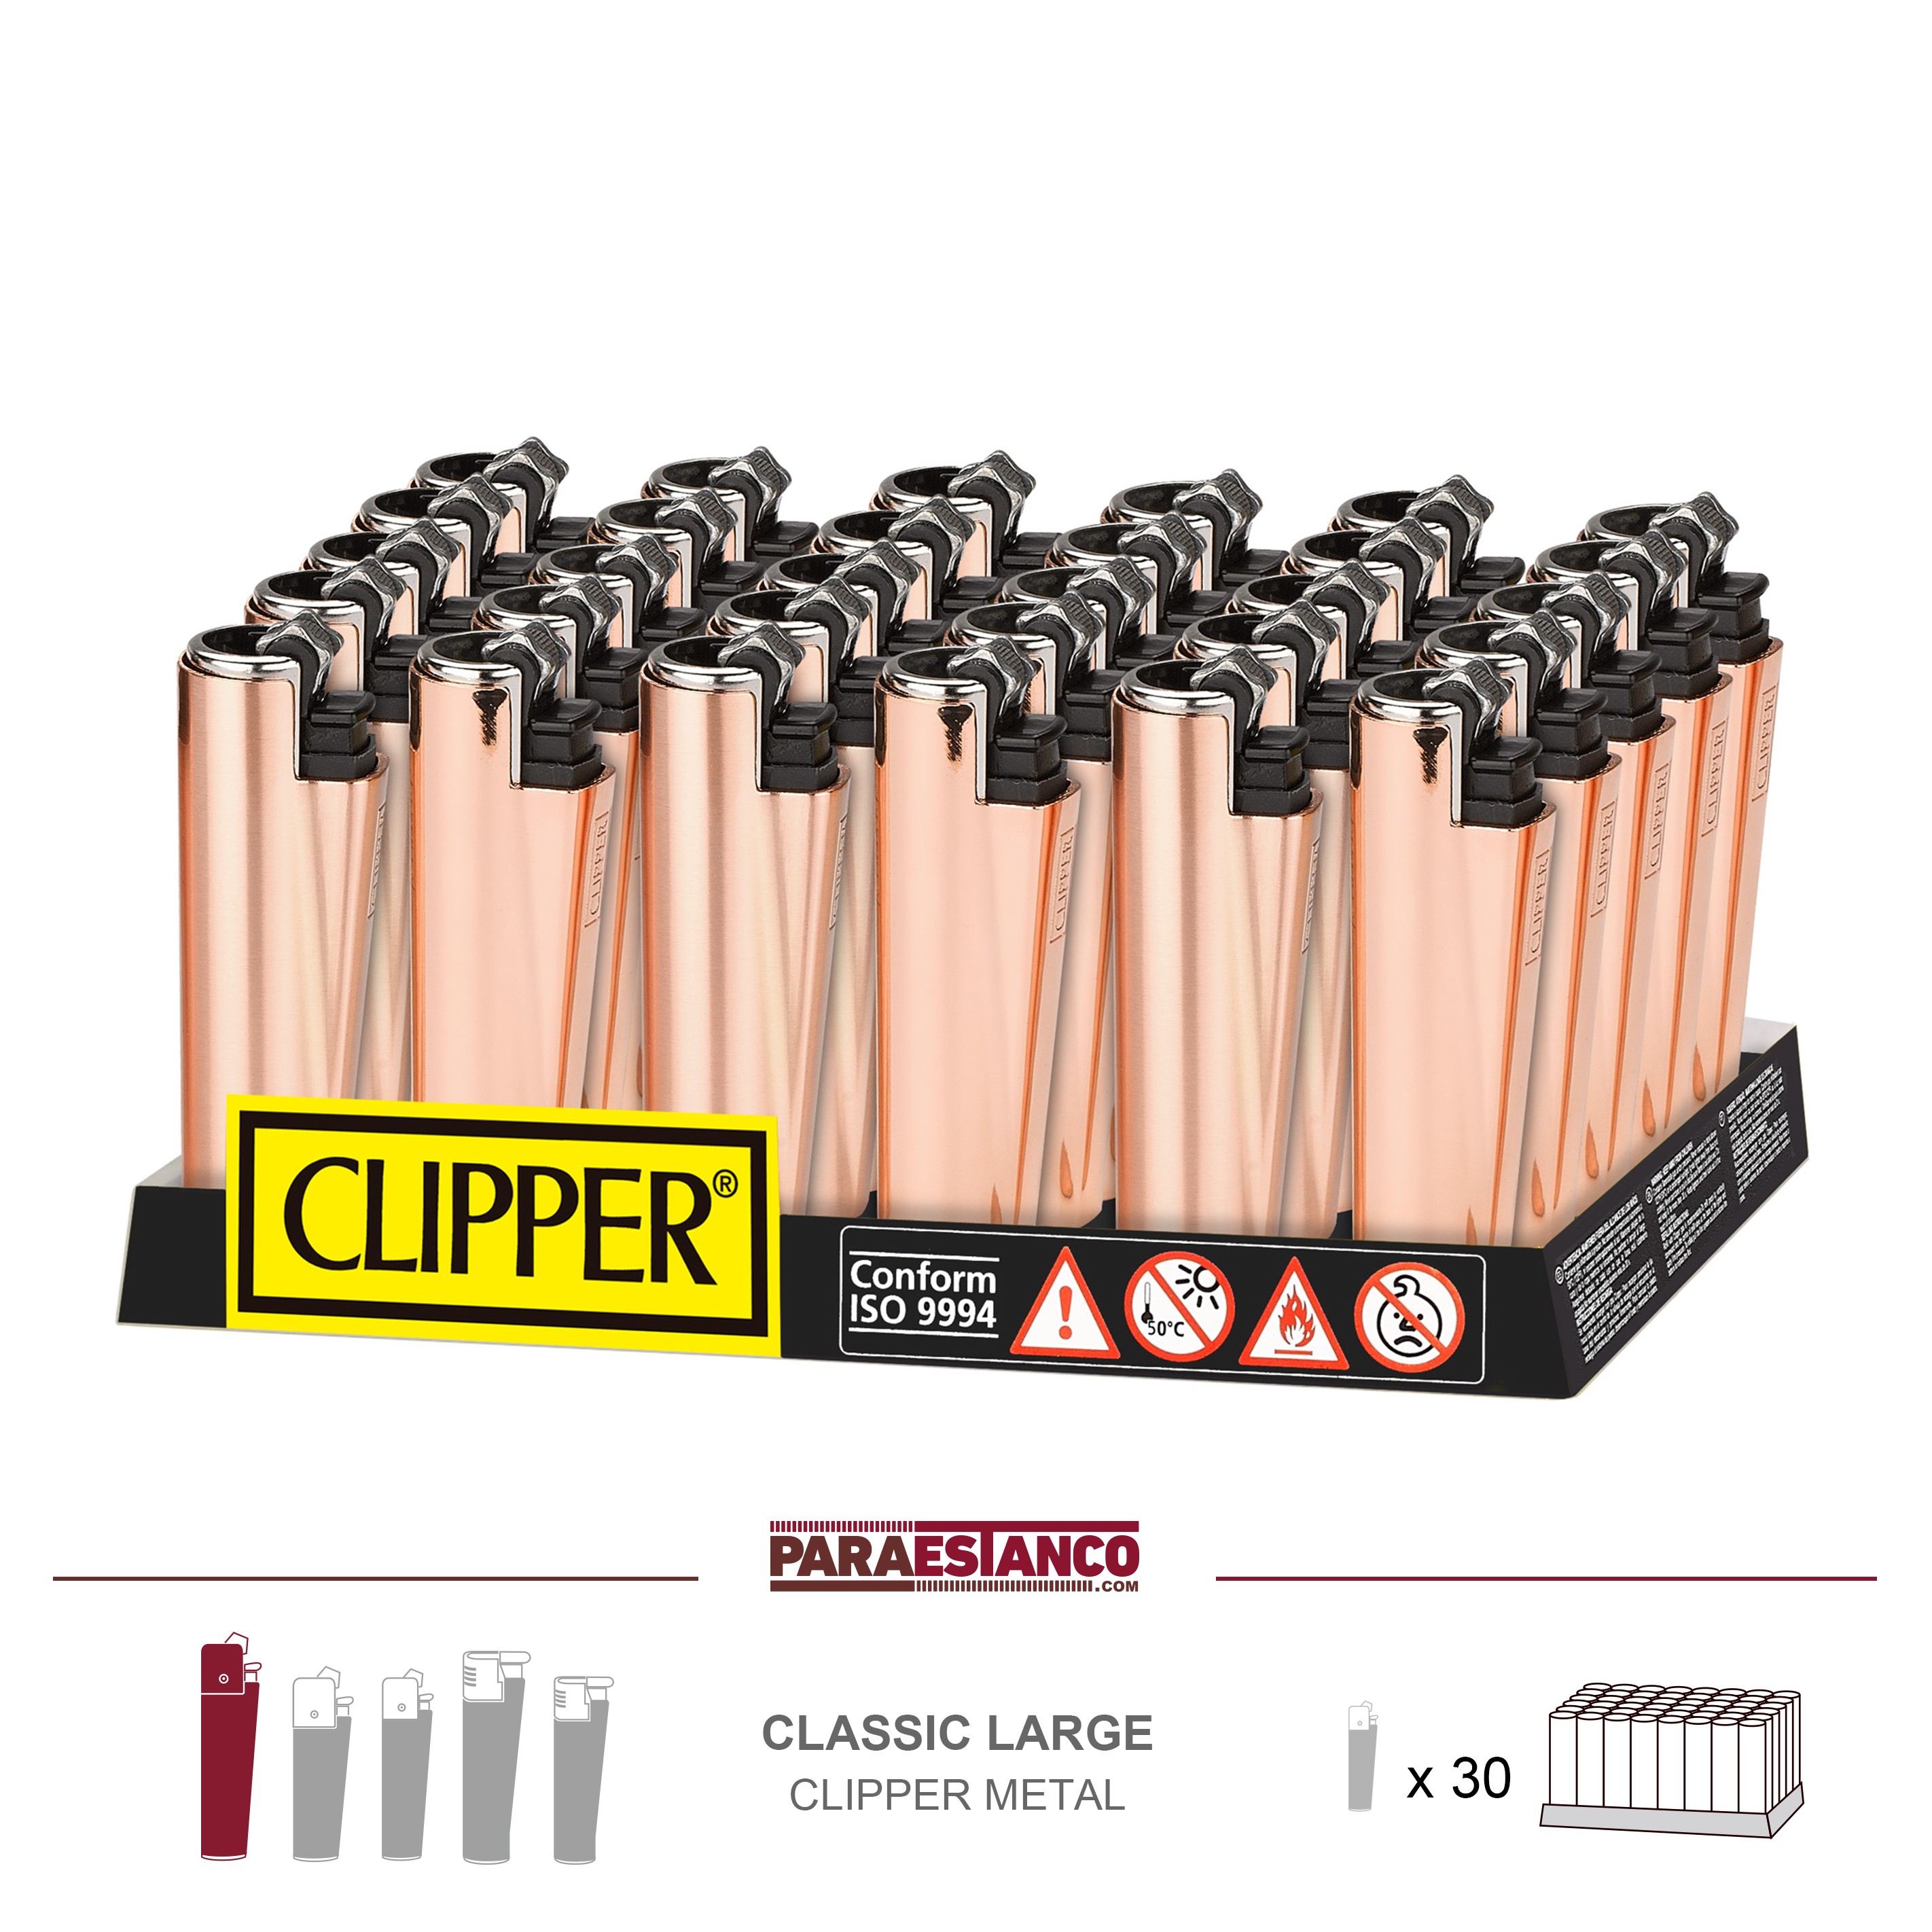 Pack de Clipper 48 Mecheros Encendedores Micro Translucent Liso 8colores  CP22RH Y 1 Llavero Gratis